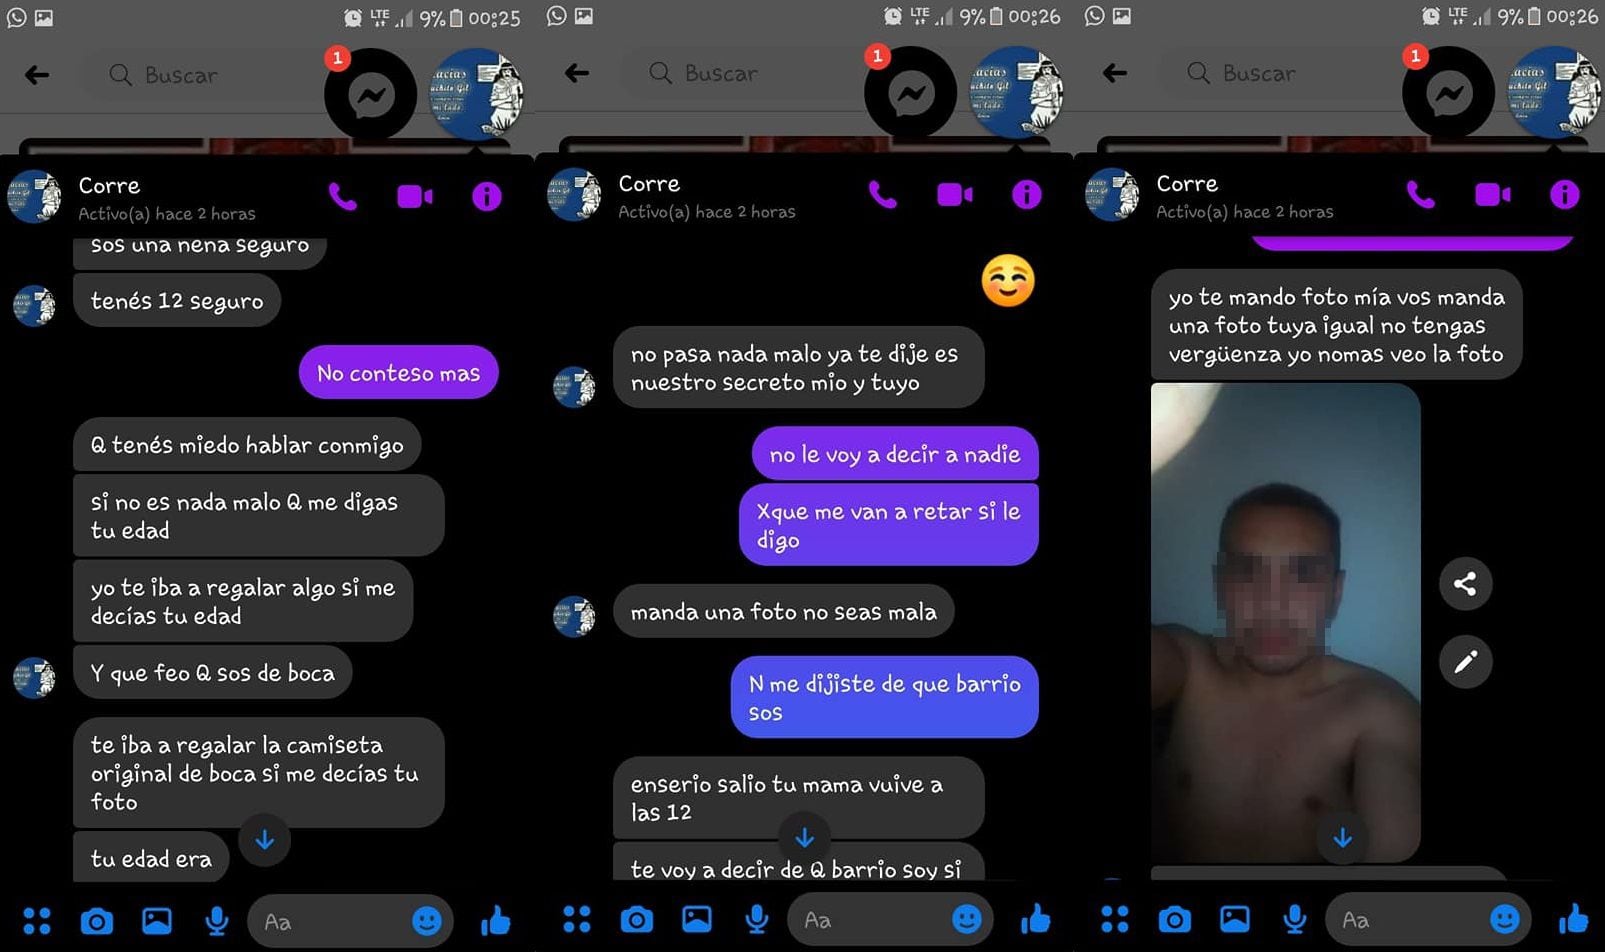 Grooming: chats del hombre que contactó a una niña de 12 años en Santa Cruz - 